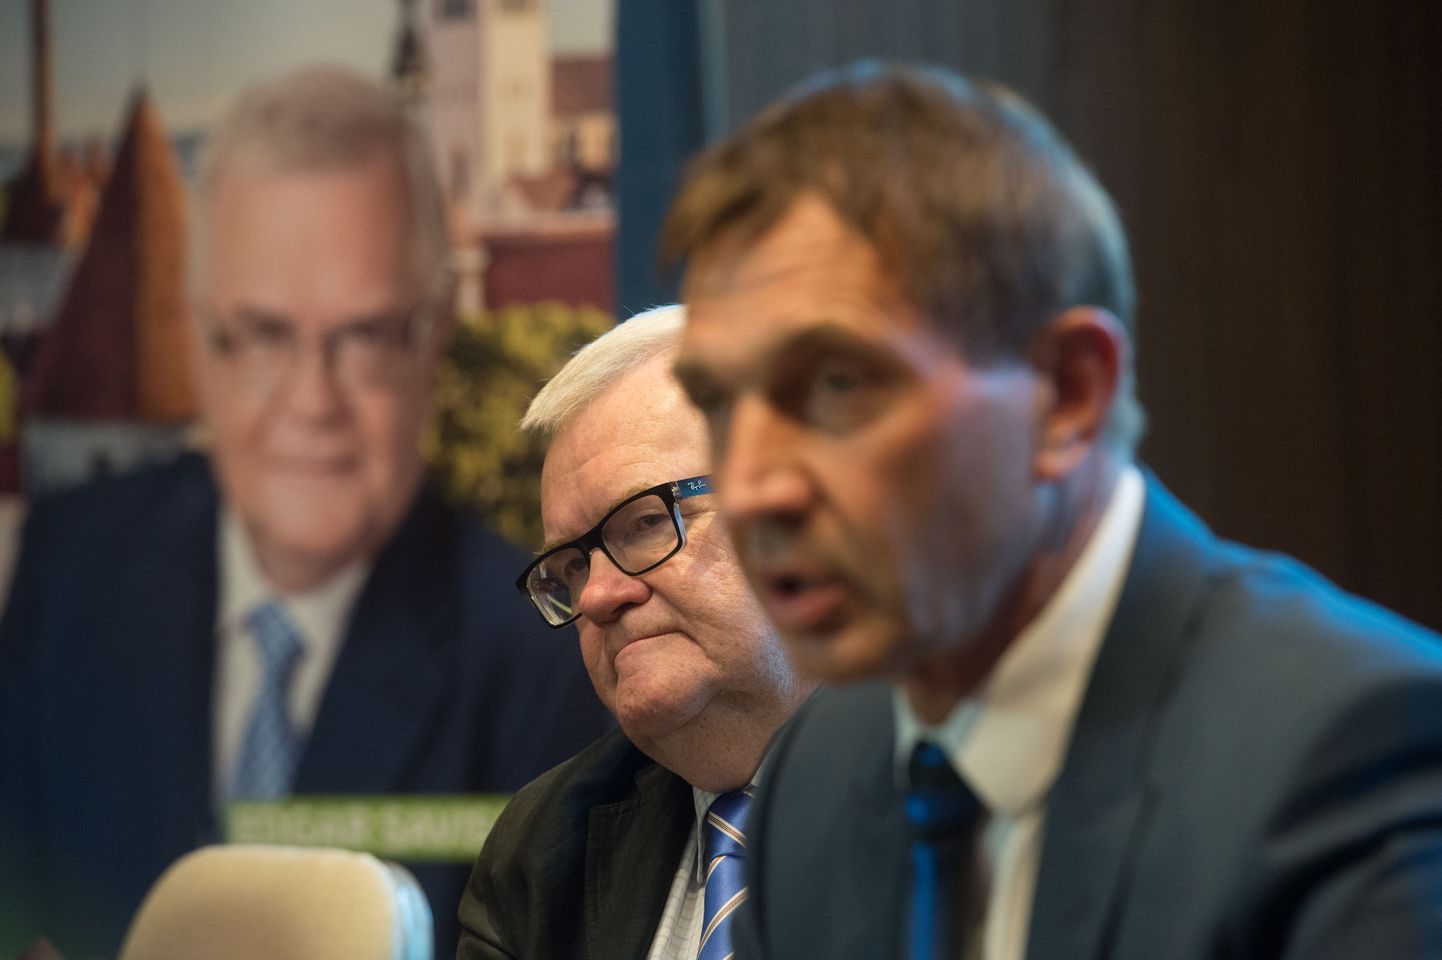 Valimisliidud Savisaare Liit ja Tegus Tallinn teatasid pressikonverentsil, et lähevad valimistele ühise nimekirjaga.